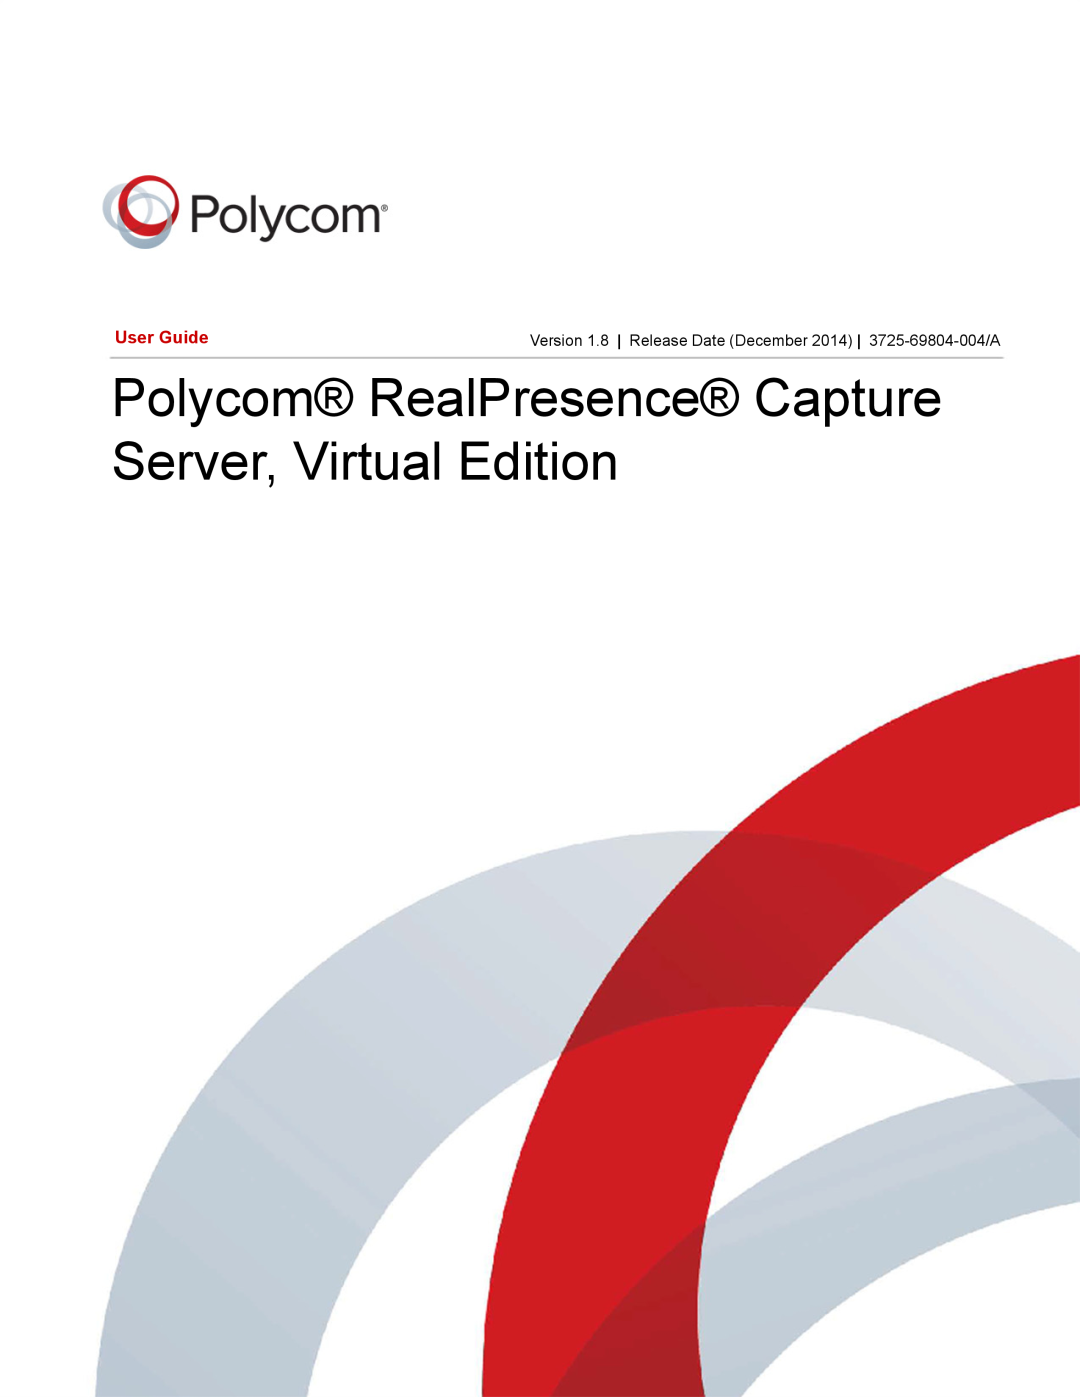 Polycom 40/0 manual Polycom RealPresence Capture Server, Virtual Edition, User Guide 